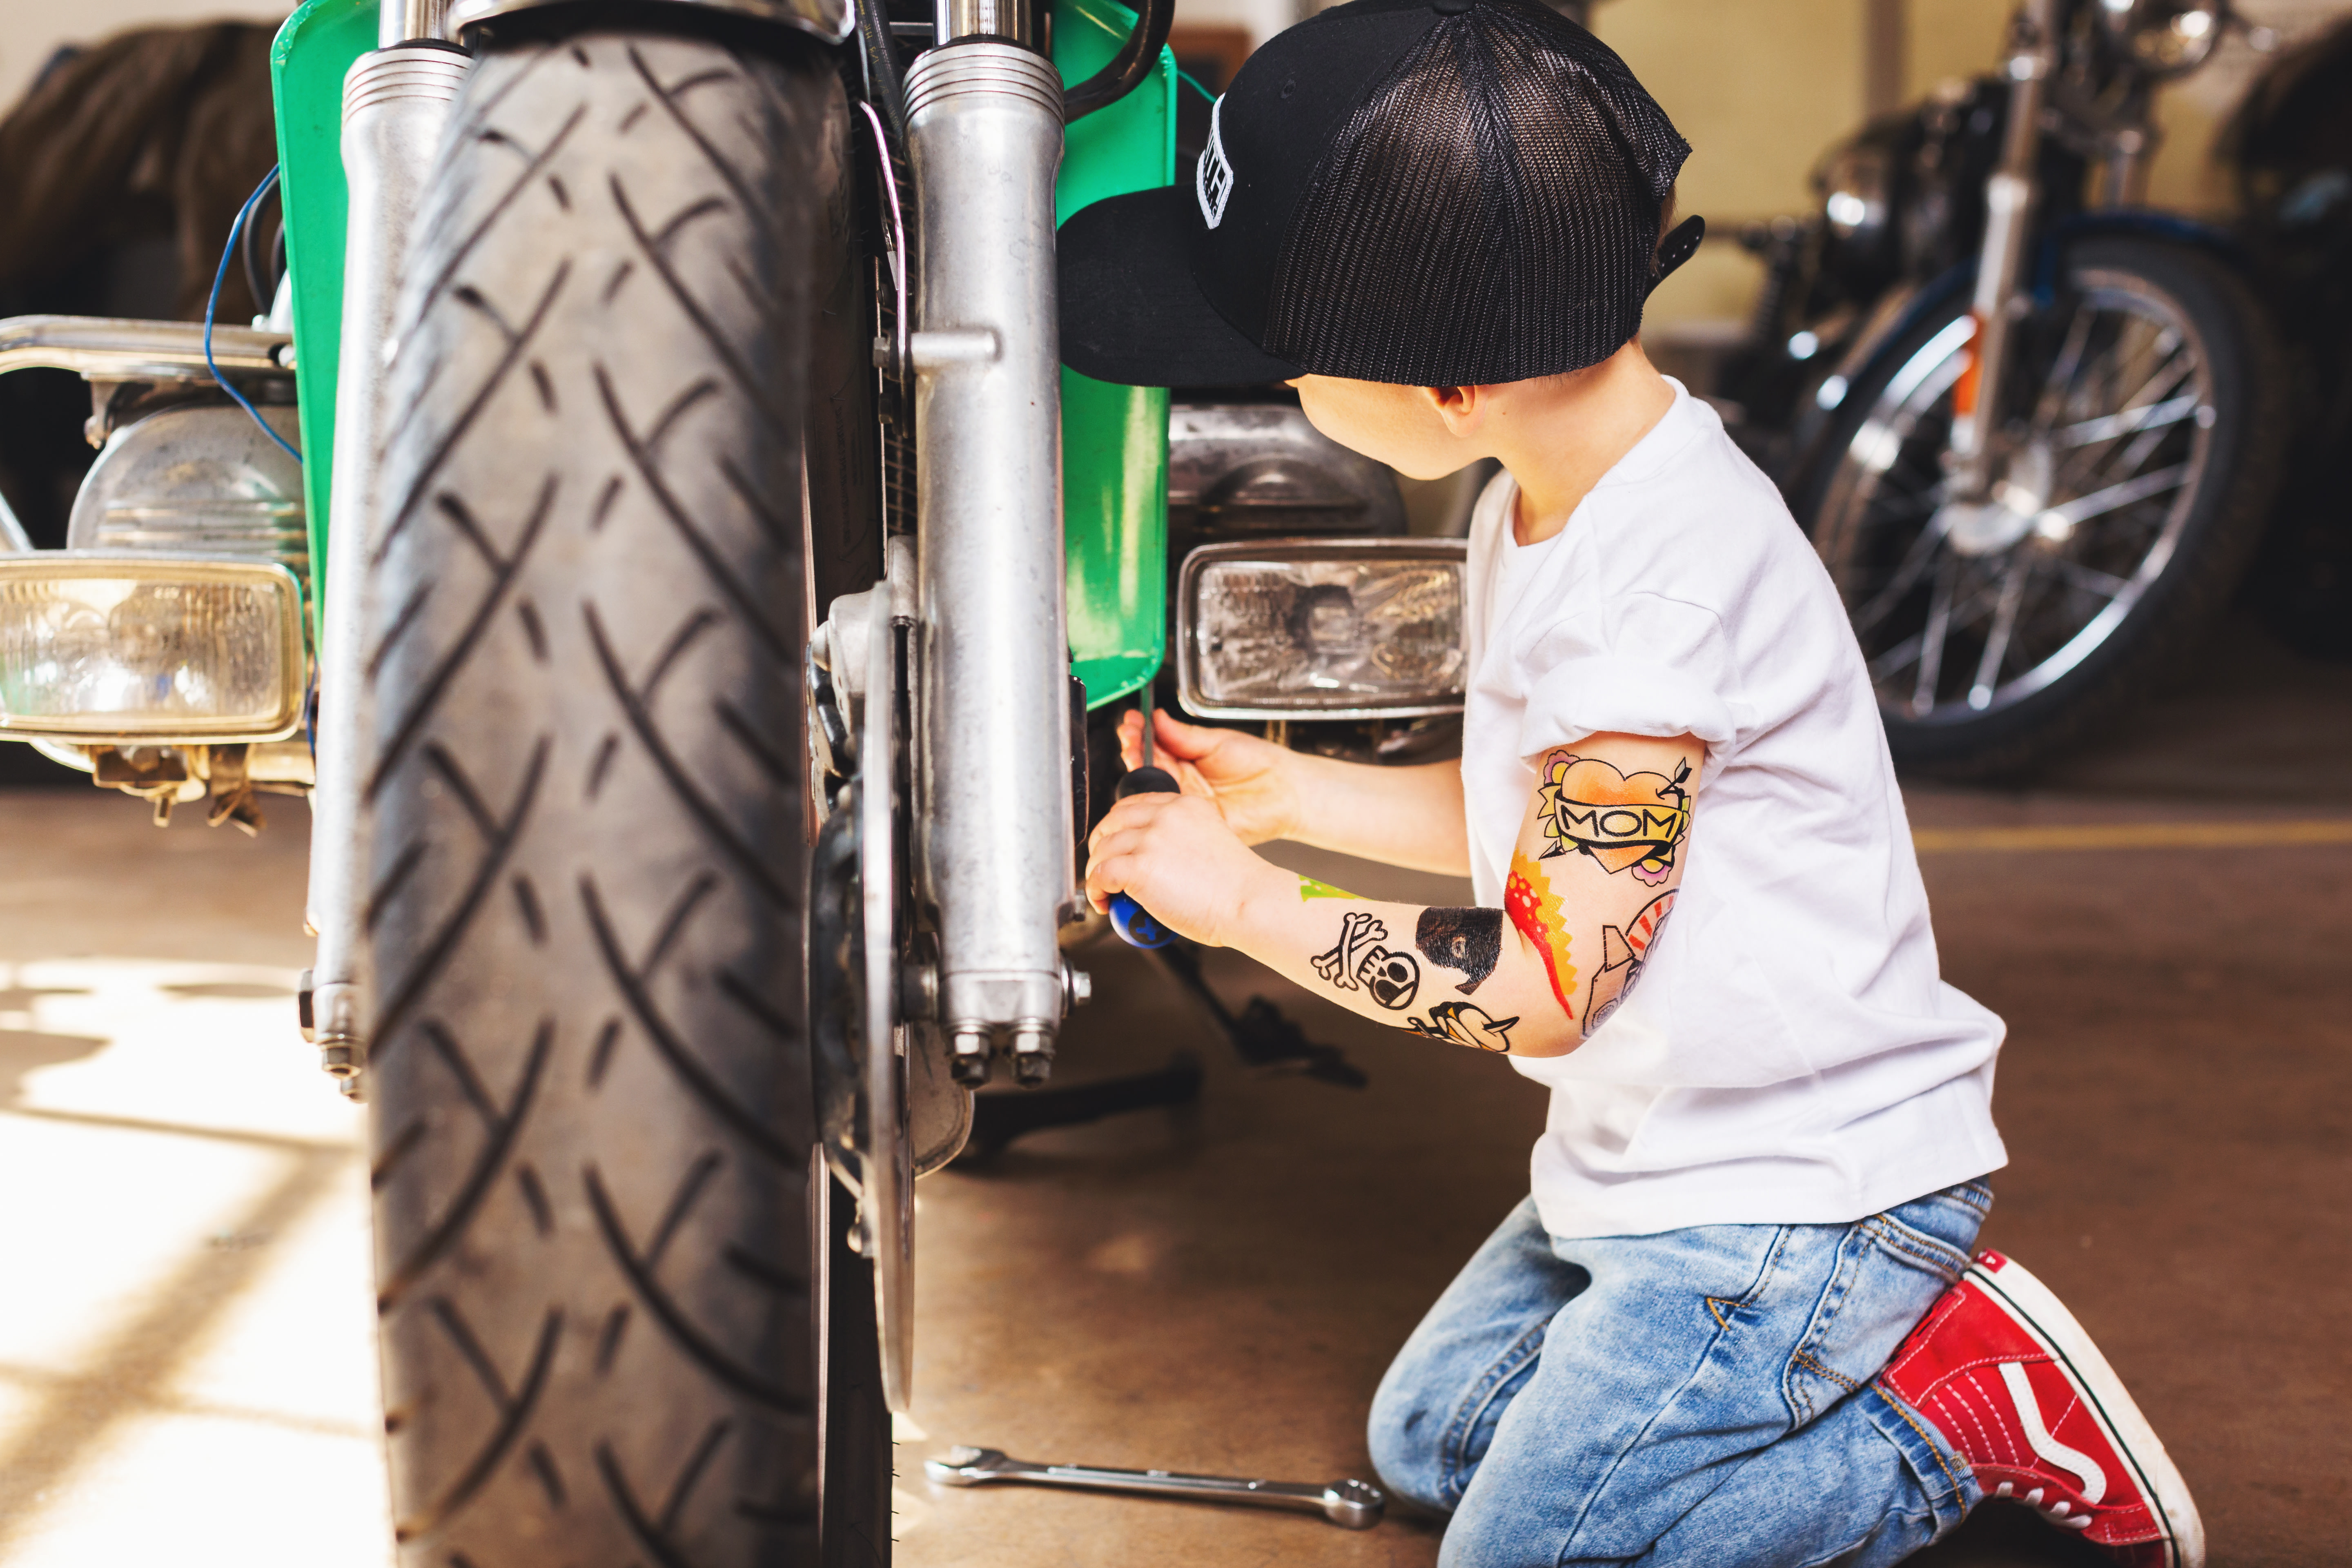 बच्चा बेसबॉल हैट और कस्टम टेम्पररी टैटू पहने हुए मोटरसाइकिल पर काम कर रहा है